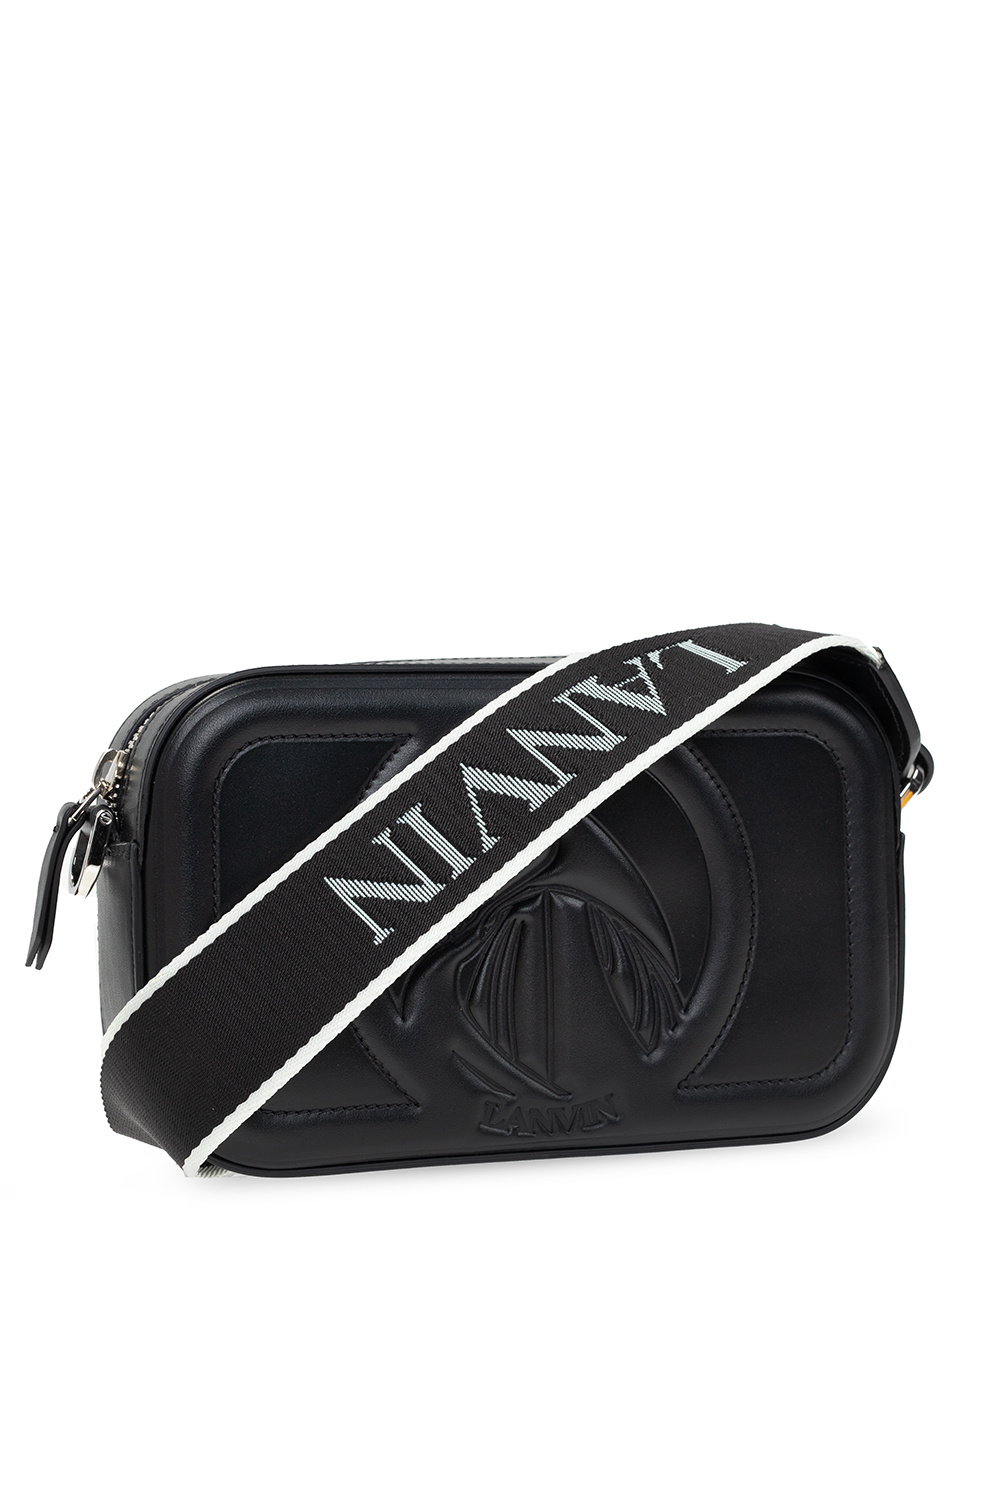 Lanvin Chanel Python 2.55 Flap Bag